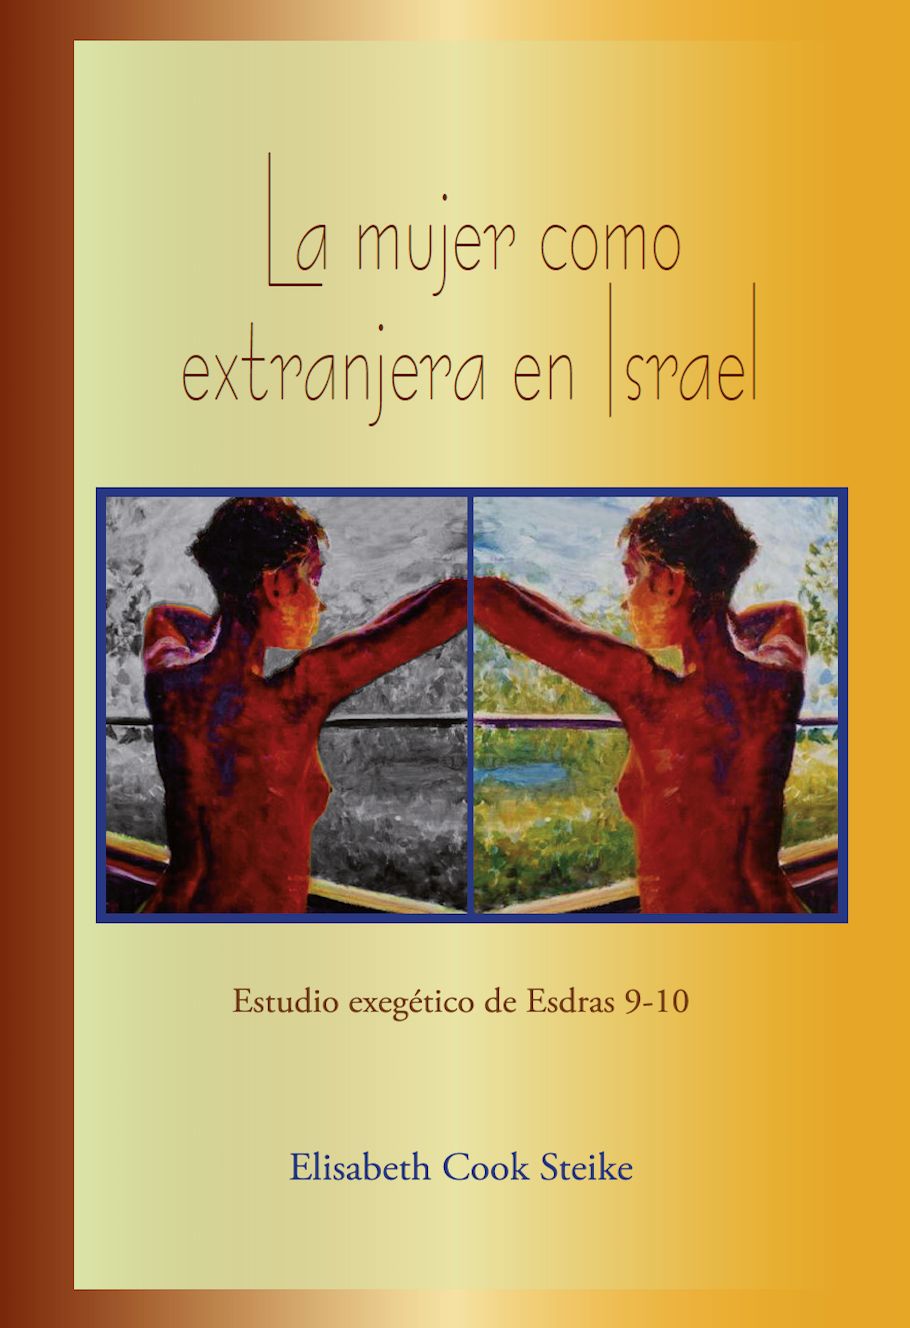 La mujer como extranjera en Israel: Estudio exegético de Esdras 9-10